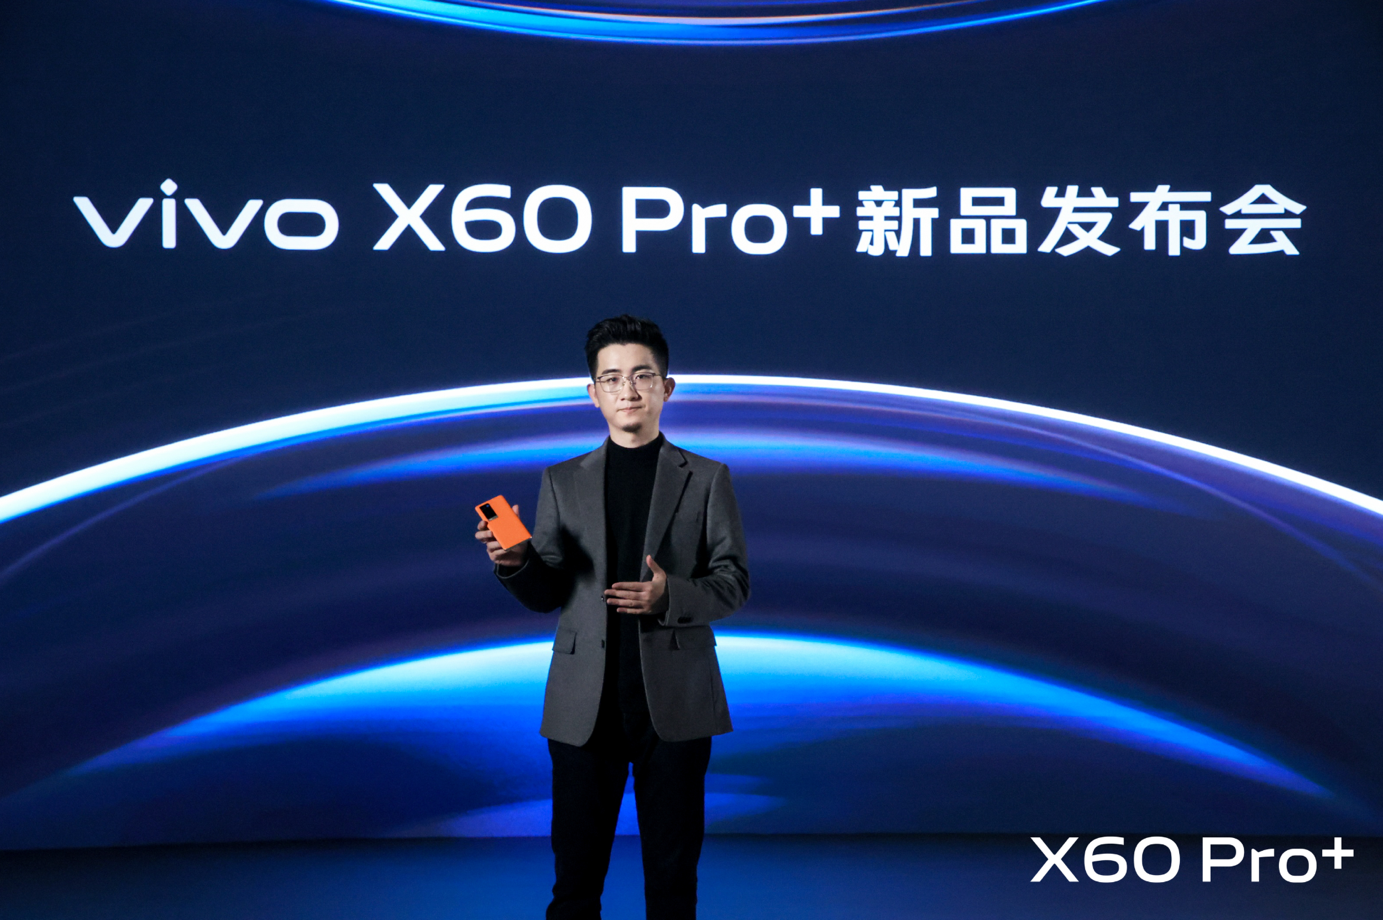 超大杯超有料 vivo X60 Pro+正式发布